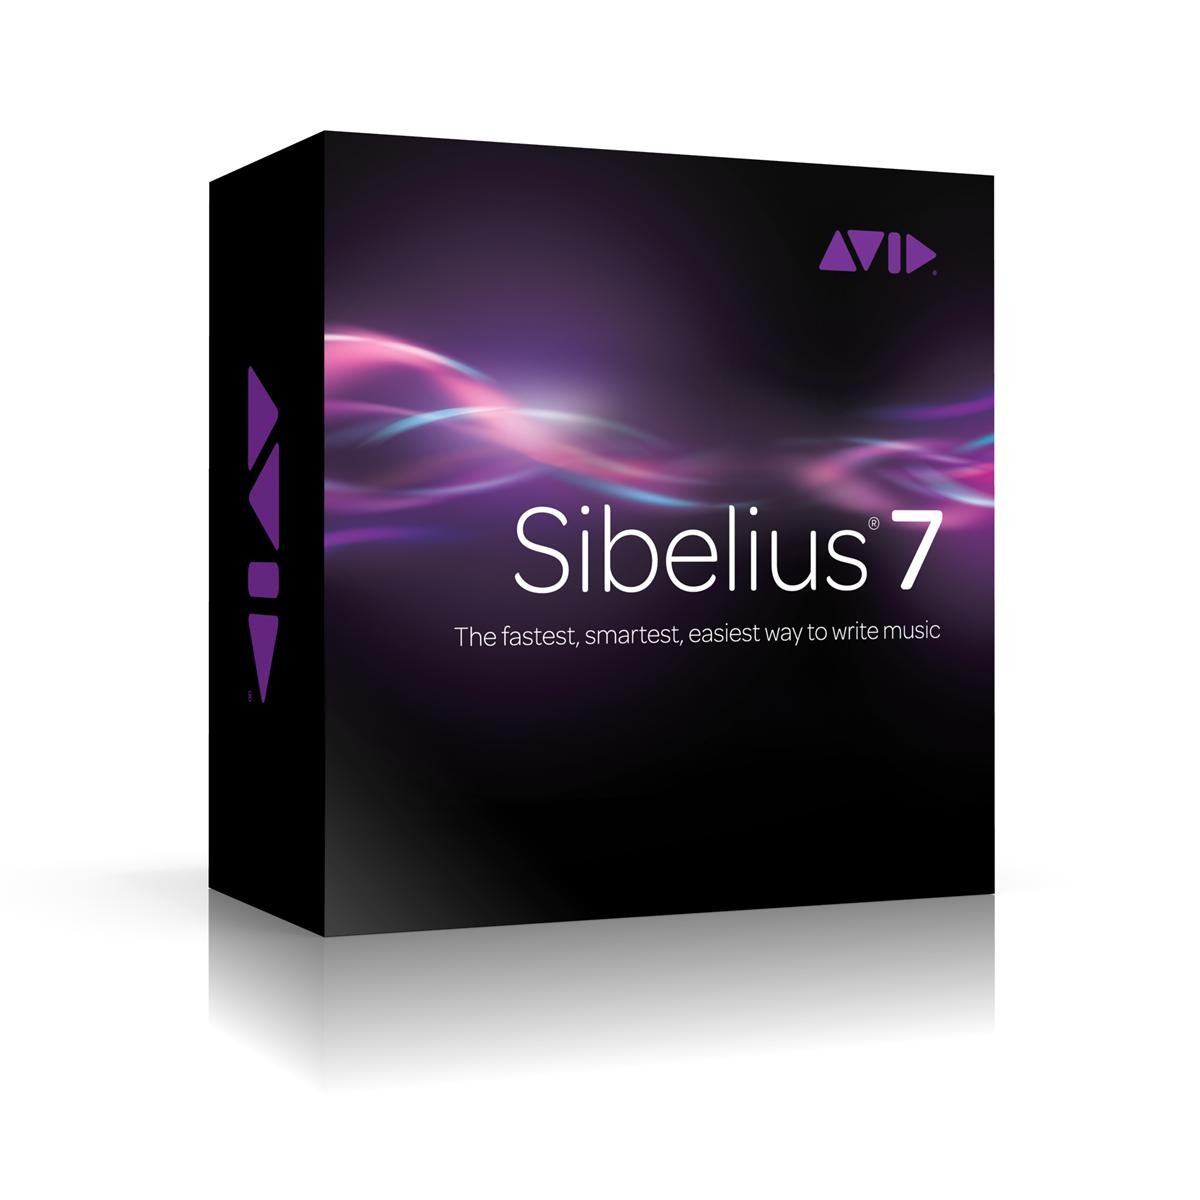 Sibelius 7 oppgraderinger / crossgrade